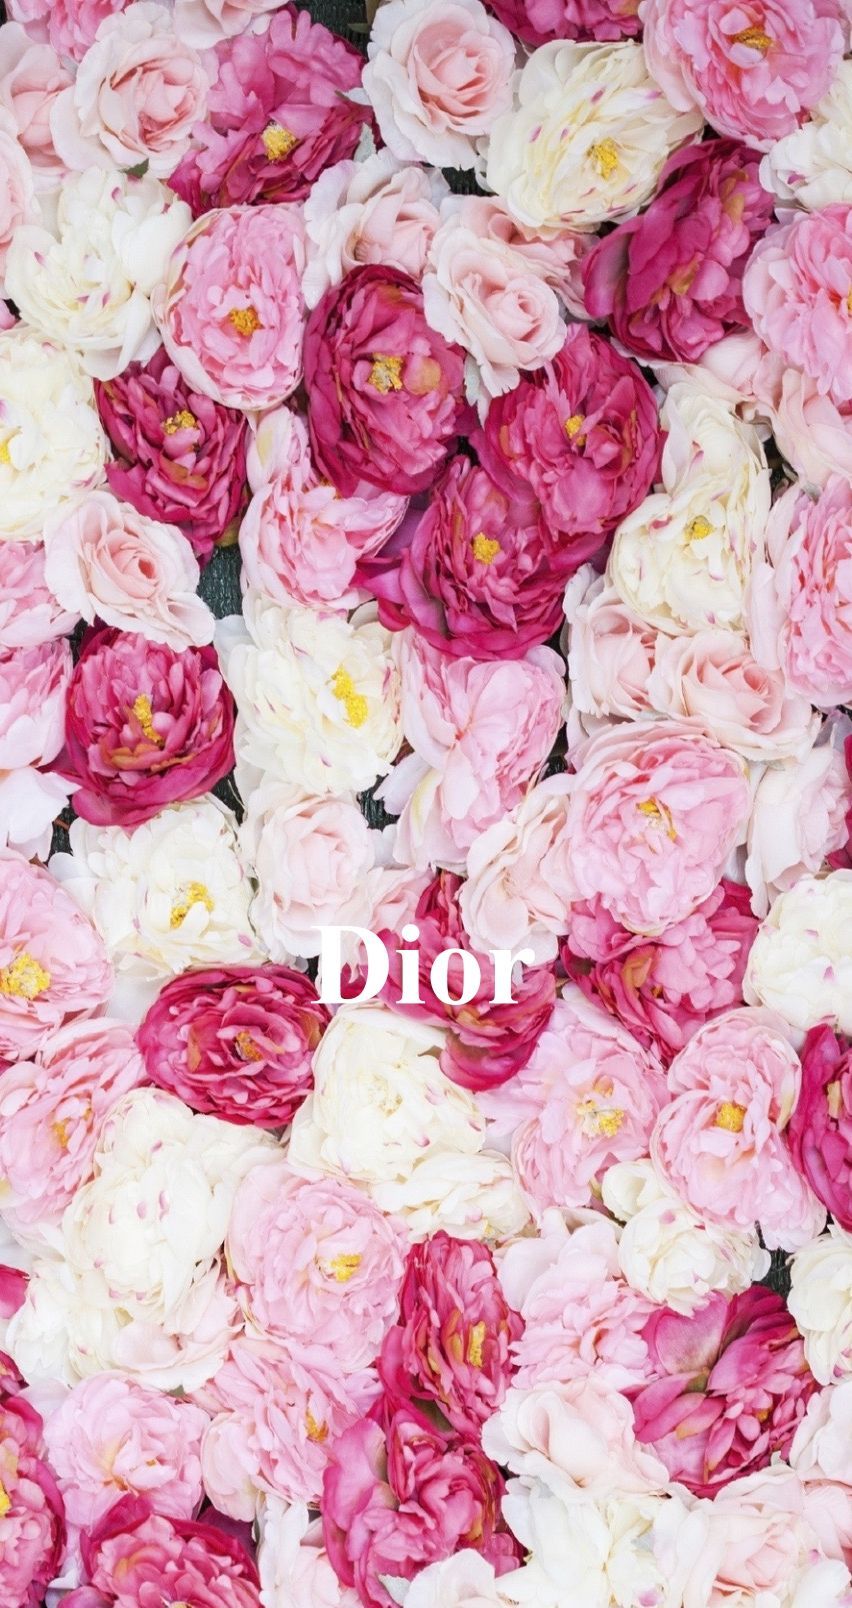 Dior Flower Wallpaper Free Dior Flower Background